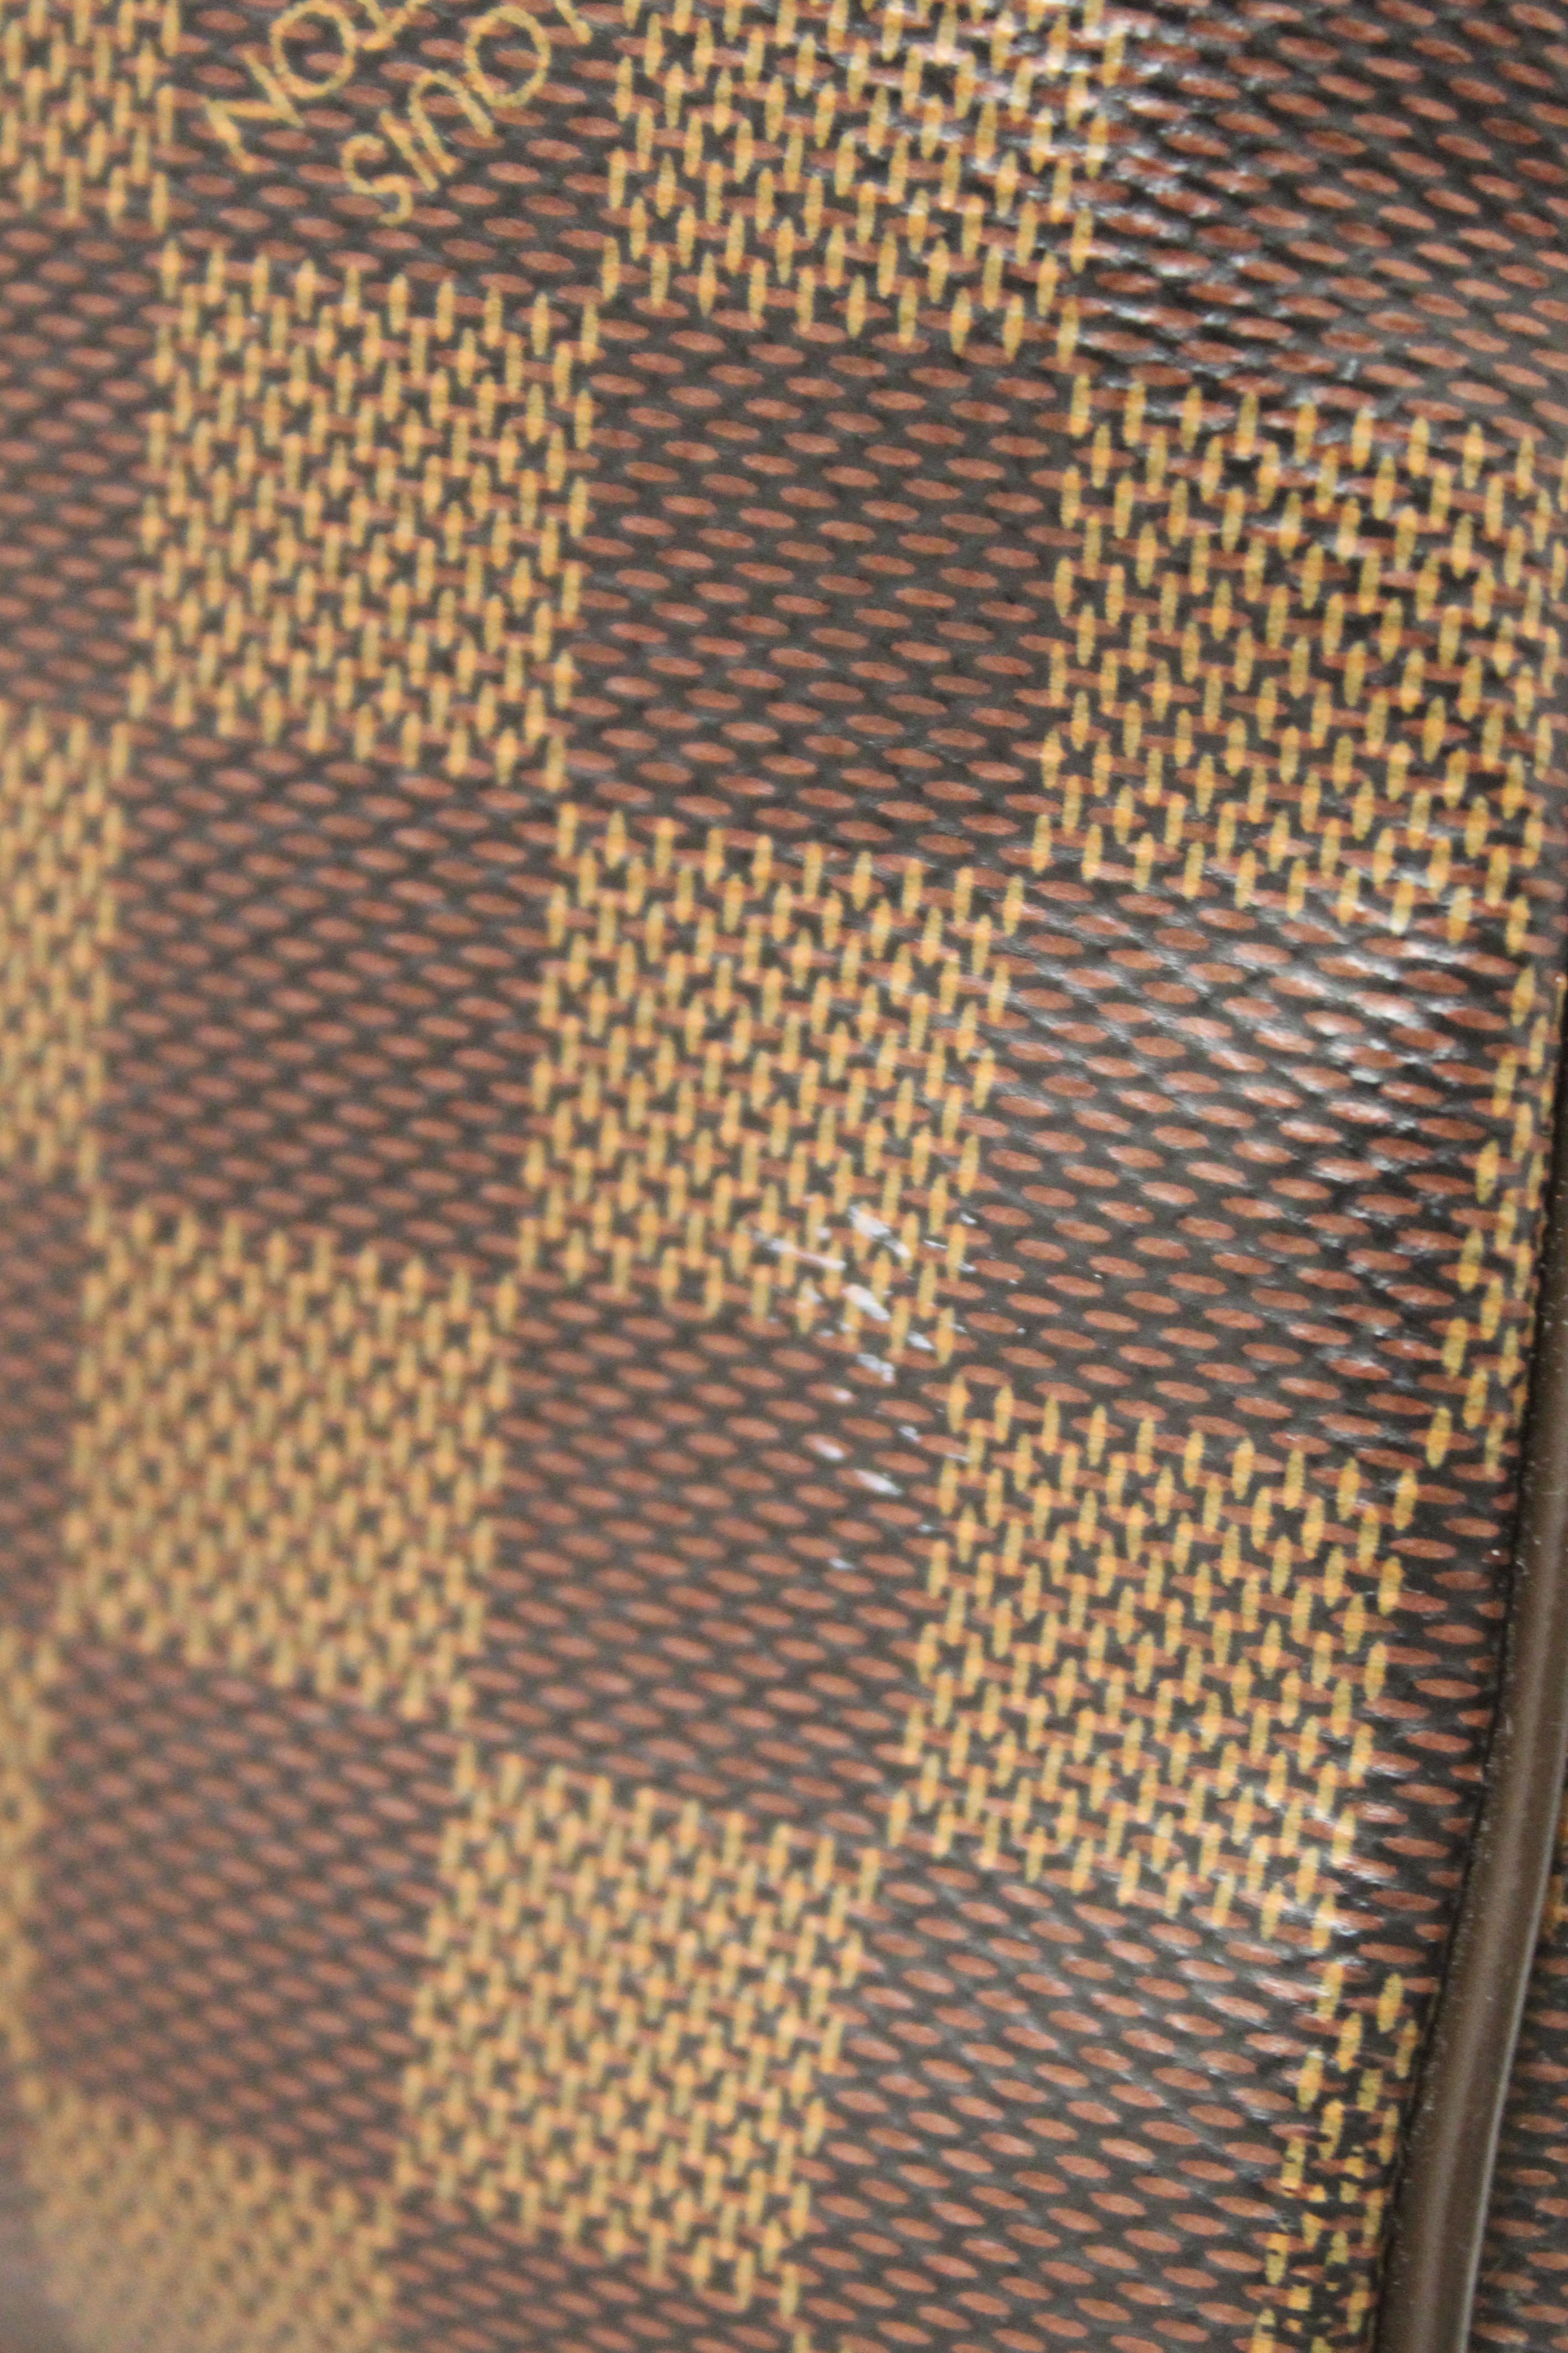 Authentic Louis Vuitton Damier Ebene Speedy 25 Bandouliere Bag